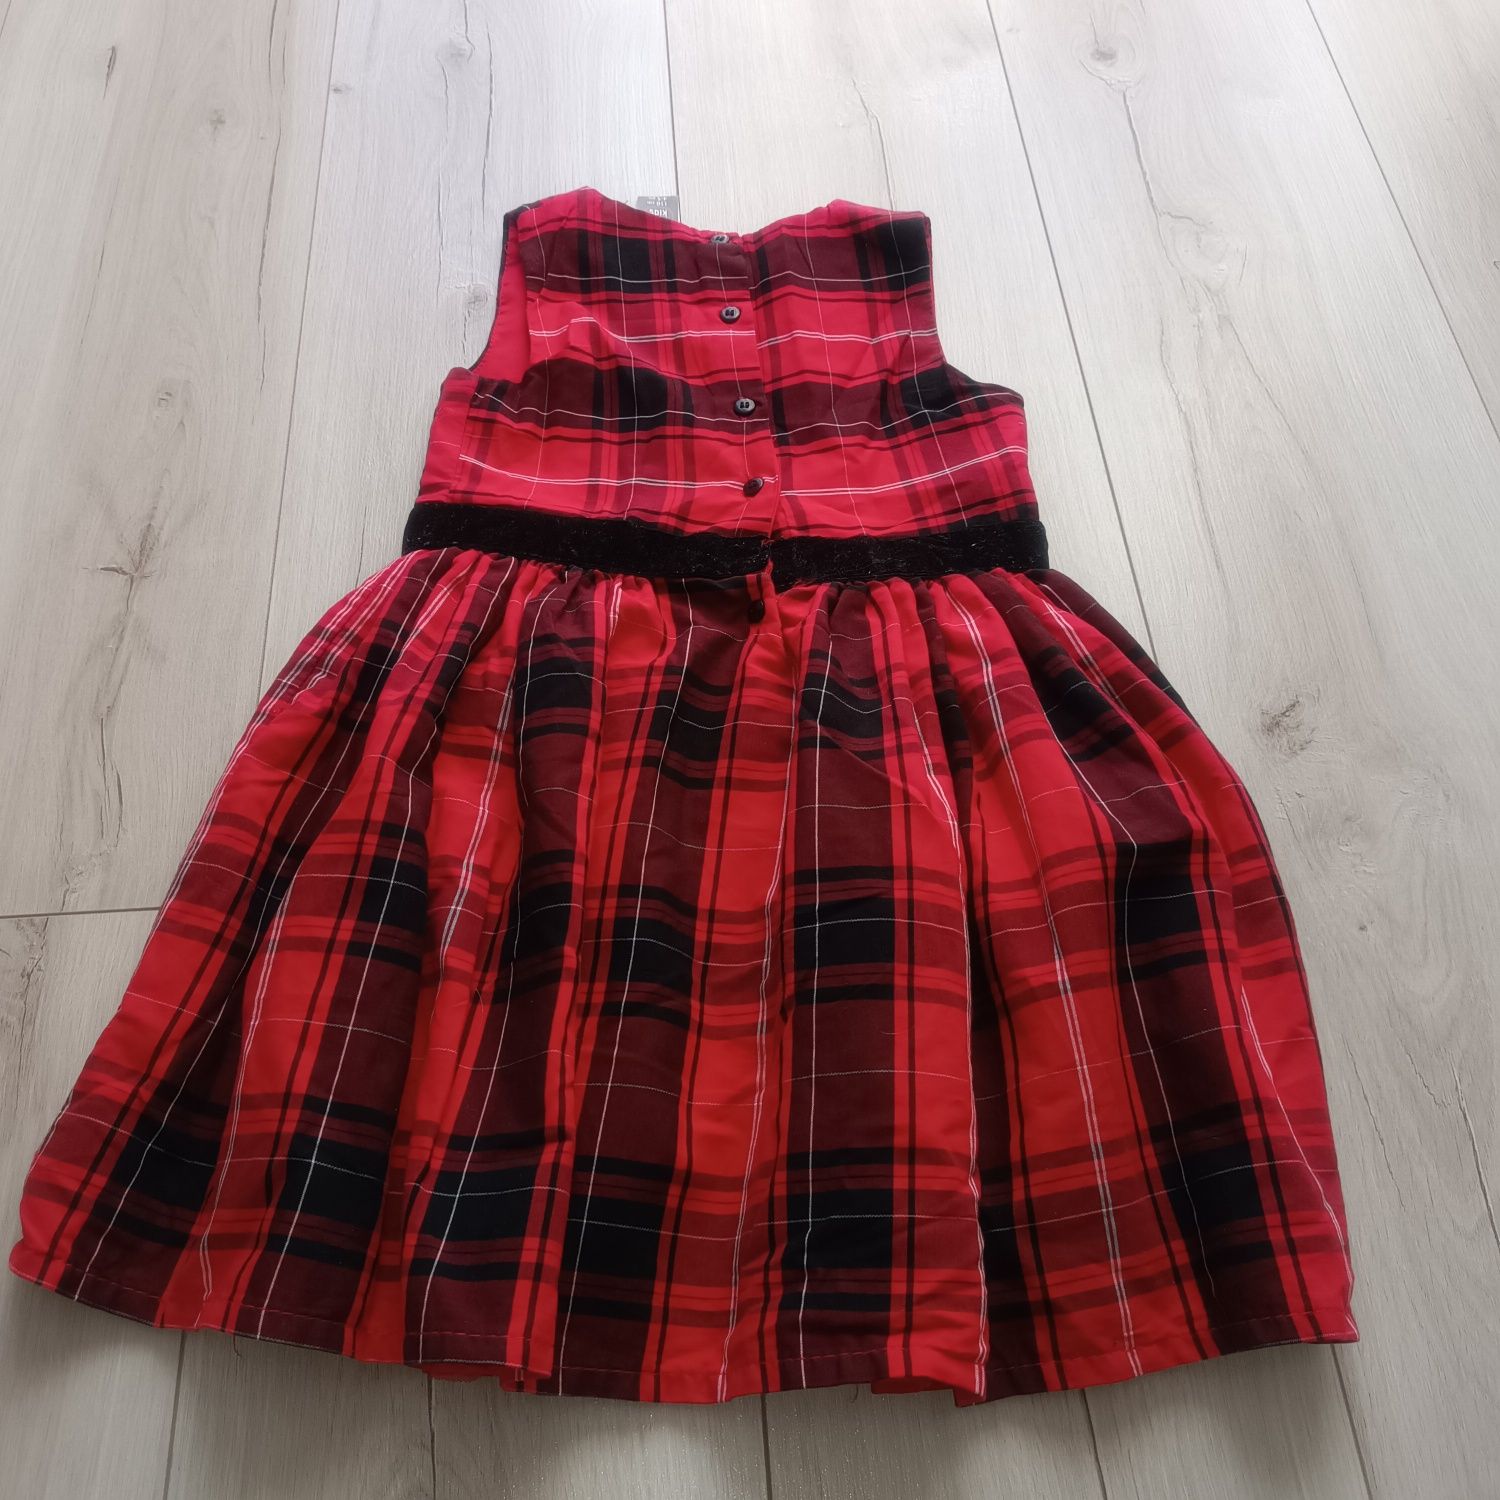 Śliczna czerwona w kratę sukienka święta świąteczna 110 cm little kids